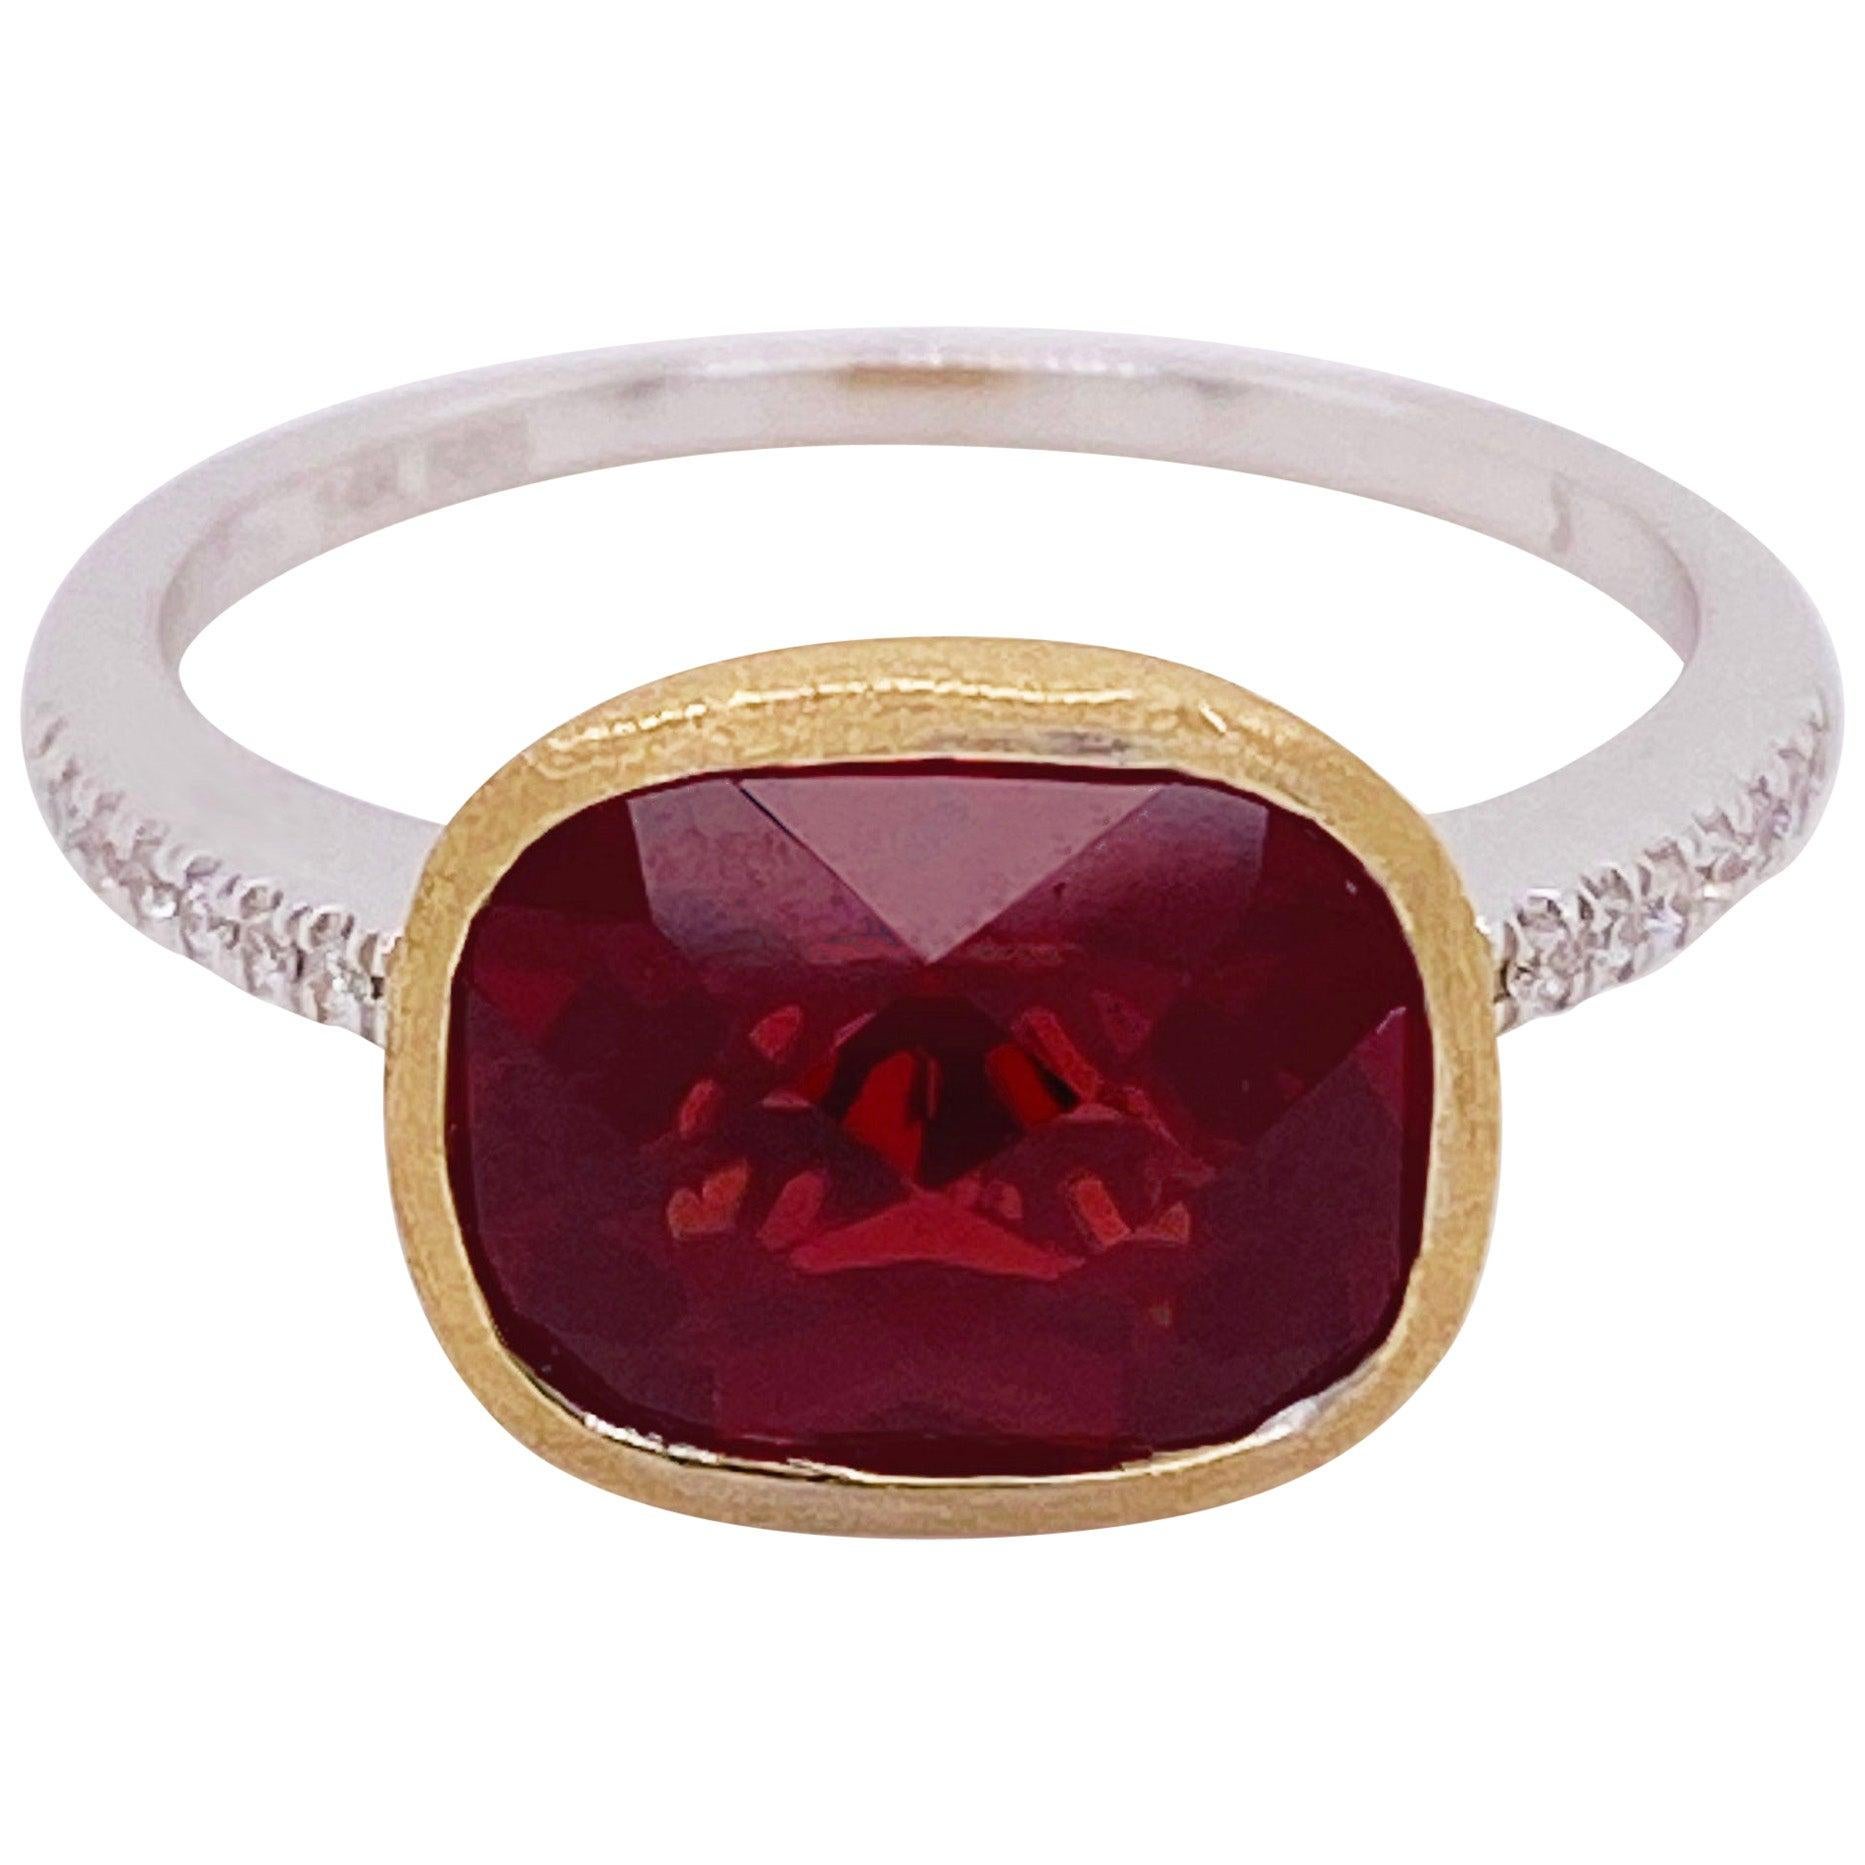 Garnet Diamond Ring, Red Garnet, Mixed Metal, 14k White and Yellow Gold, Satin